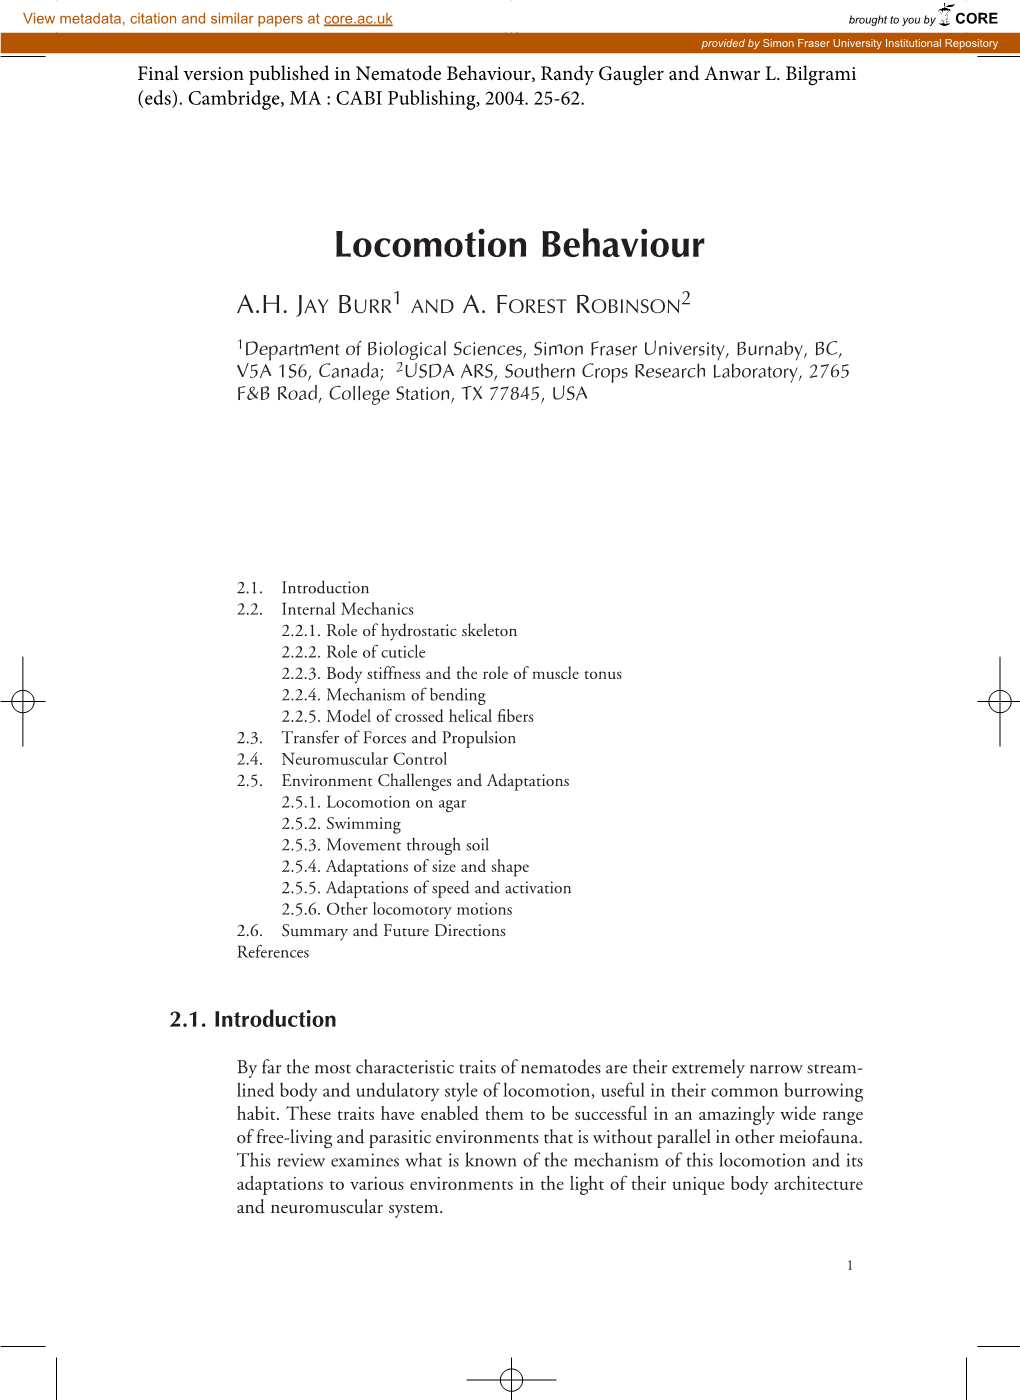 Locomotion Behaviour